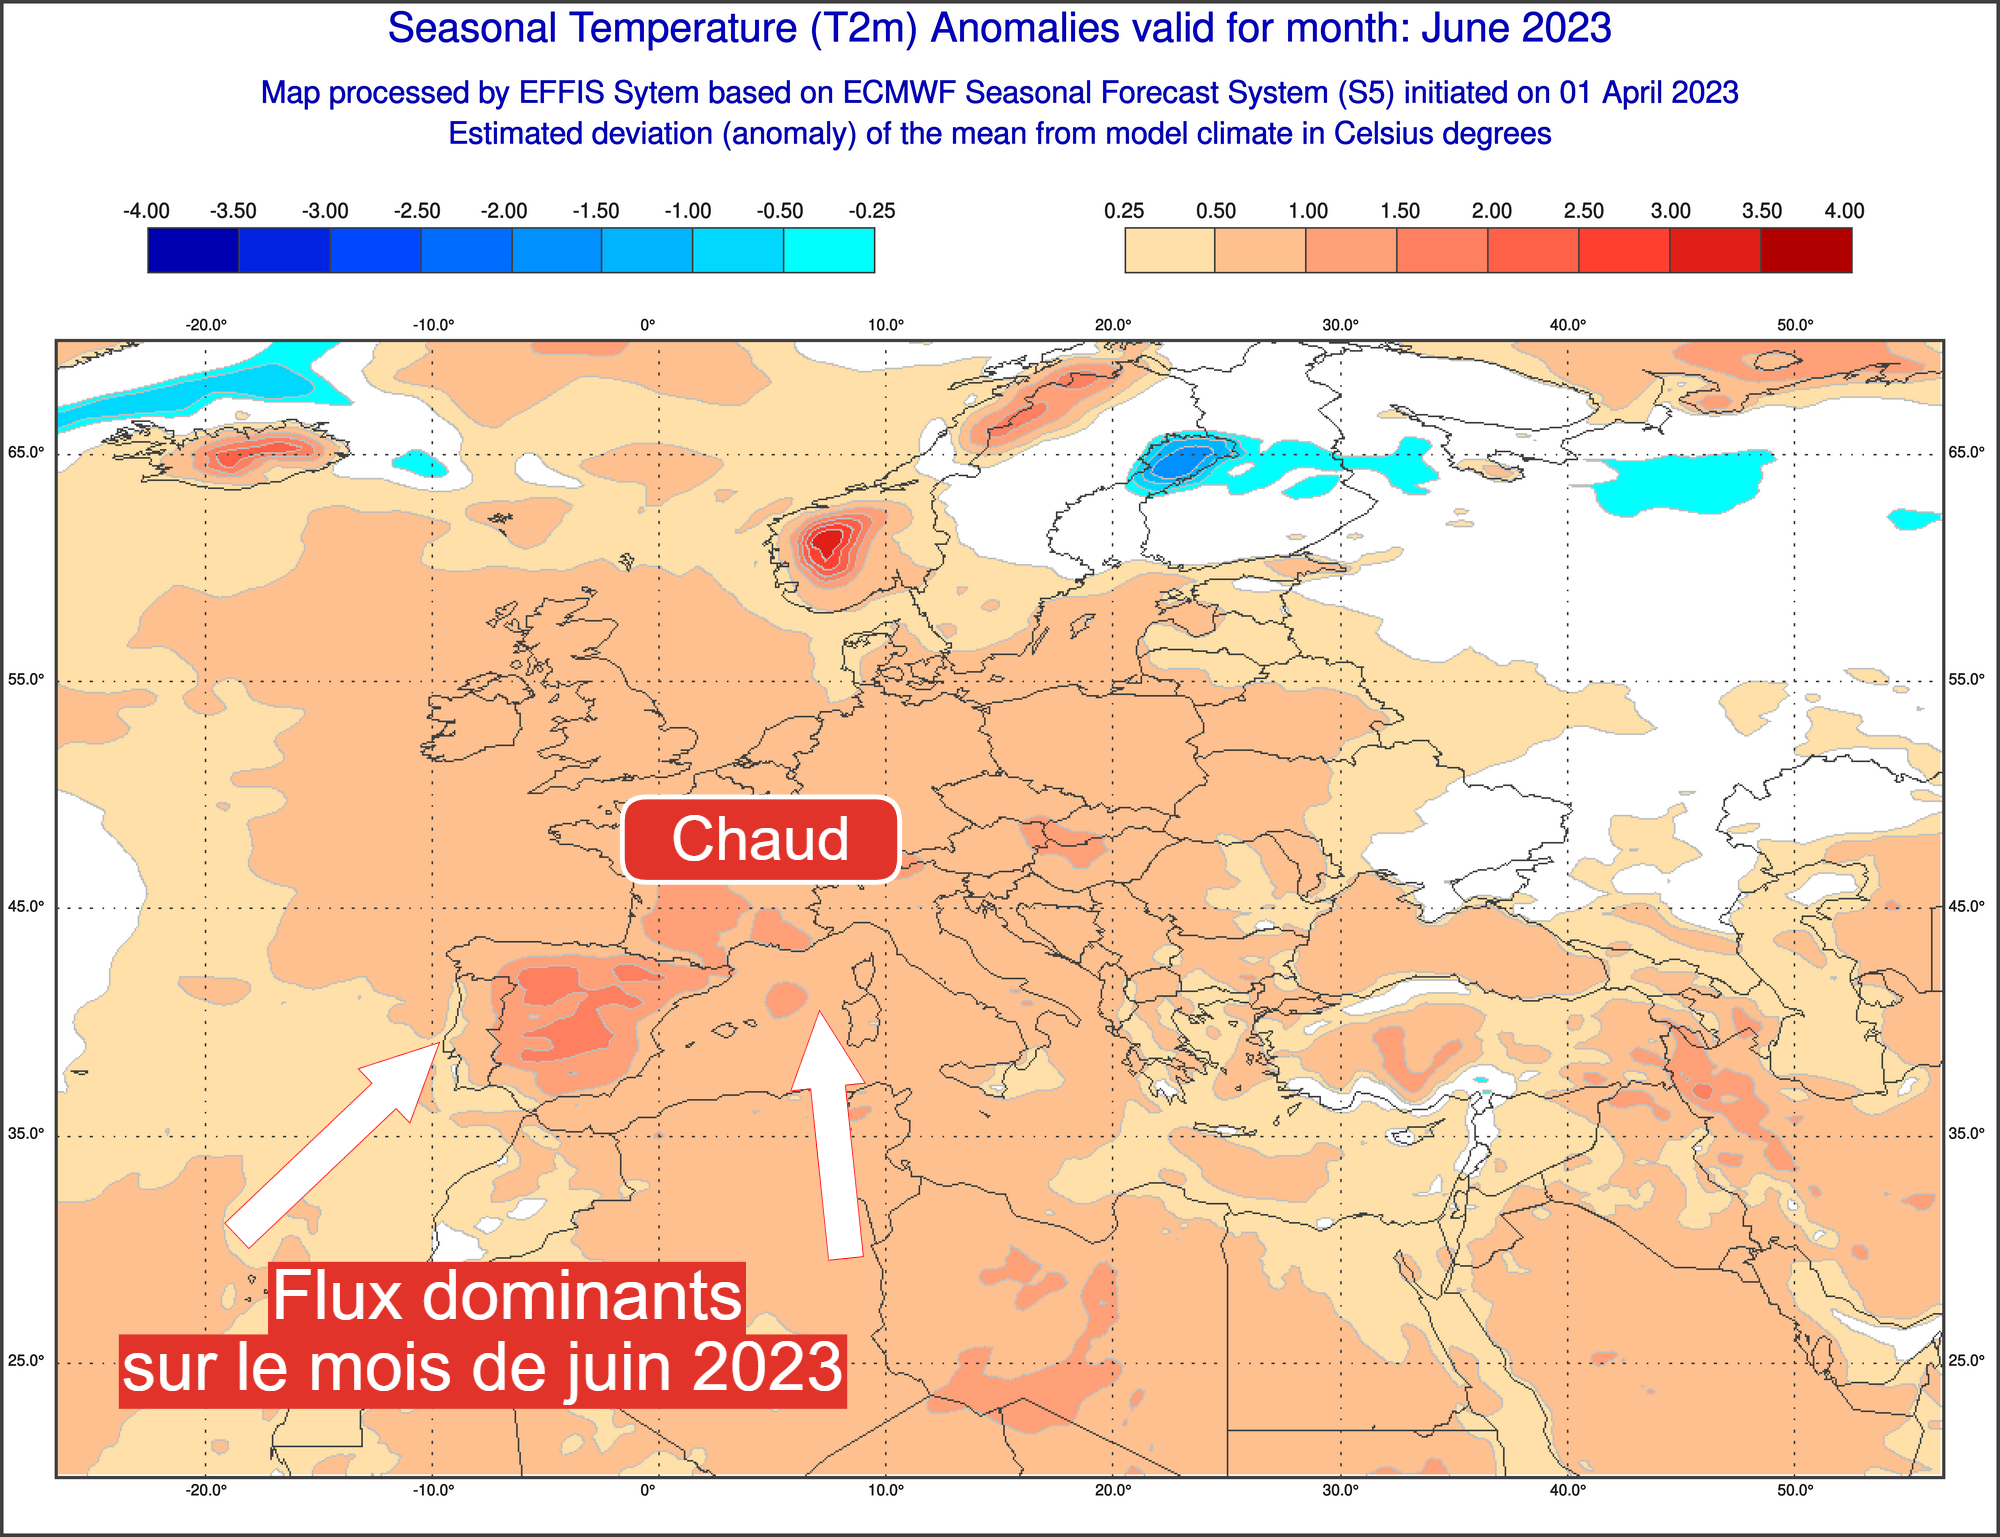 Vers un été 2023 très chaud ? Quel crédit accorder aux tendances saisonnières ? Jin2023